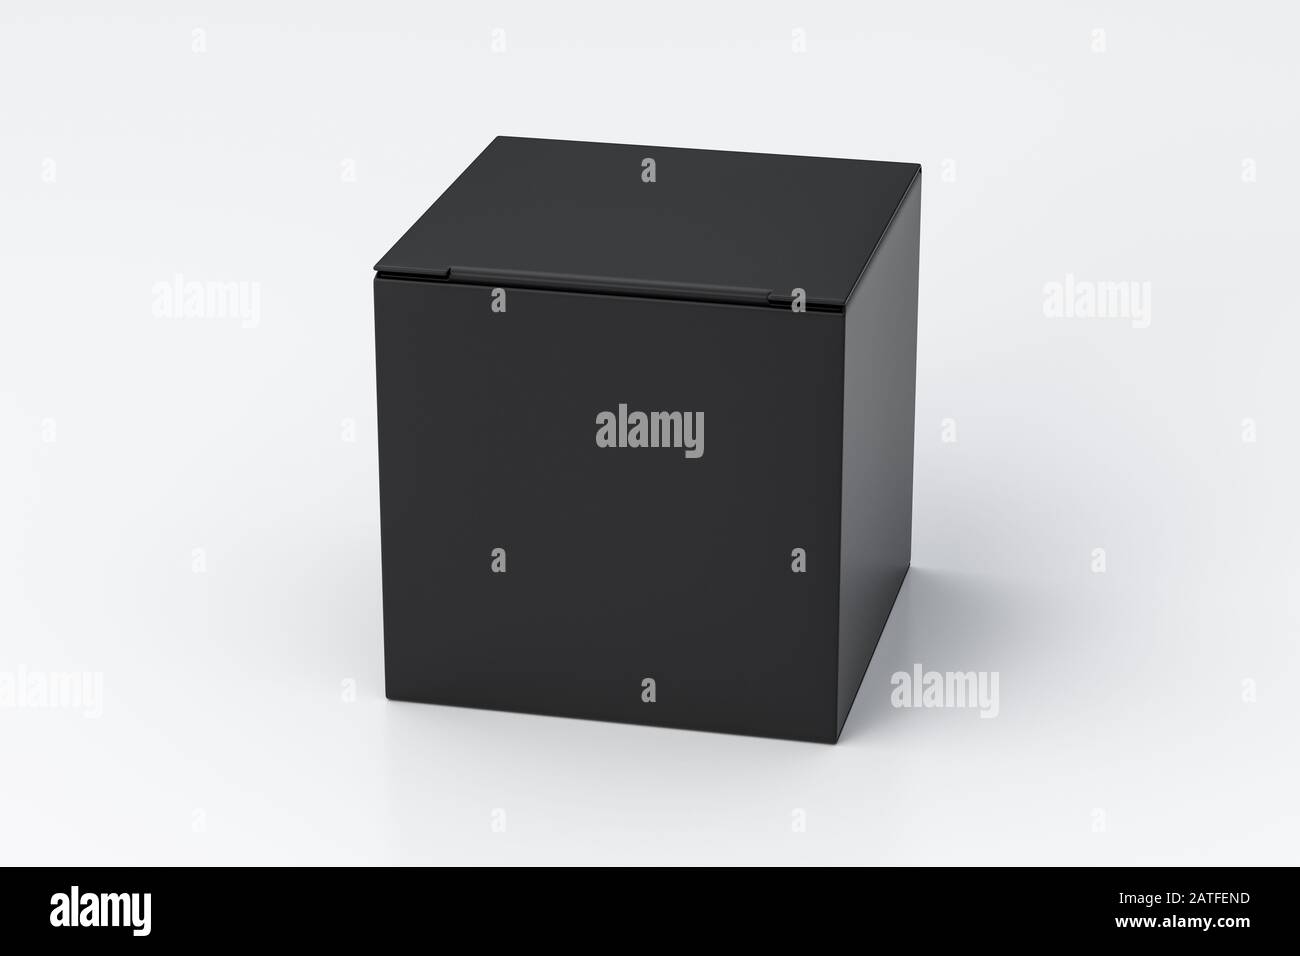 Boîte cadeau cube noire vierge avec couvercle à rabat fermé sur fond blanc. Chemin de détourage autour de la maquette de boîte Banque D'Images